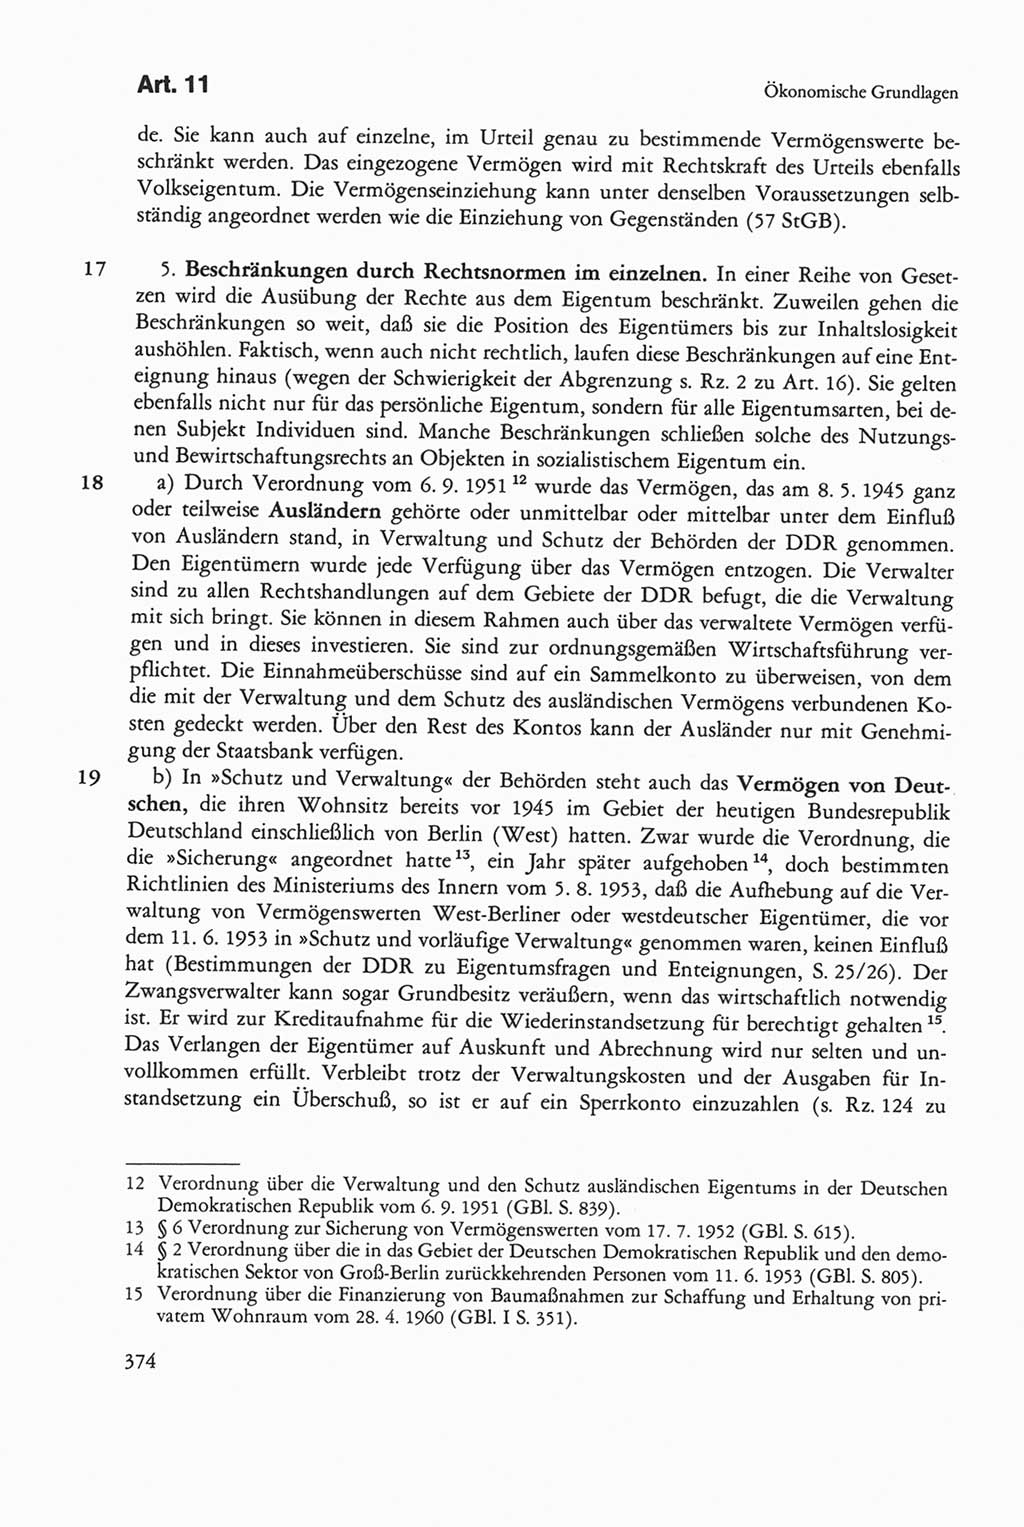 Die sozialistische Verfassung der Deutschen Demokratischen Republik (DDR), Kommentar mit einem Nachtrag 1997, Seite 374 (Soz. Verf. DDR Komm. Nachtr. 1997, S. 374)